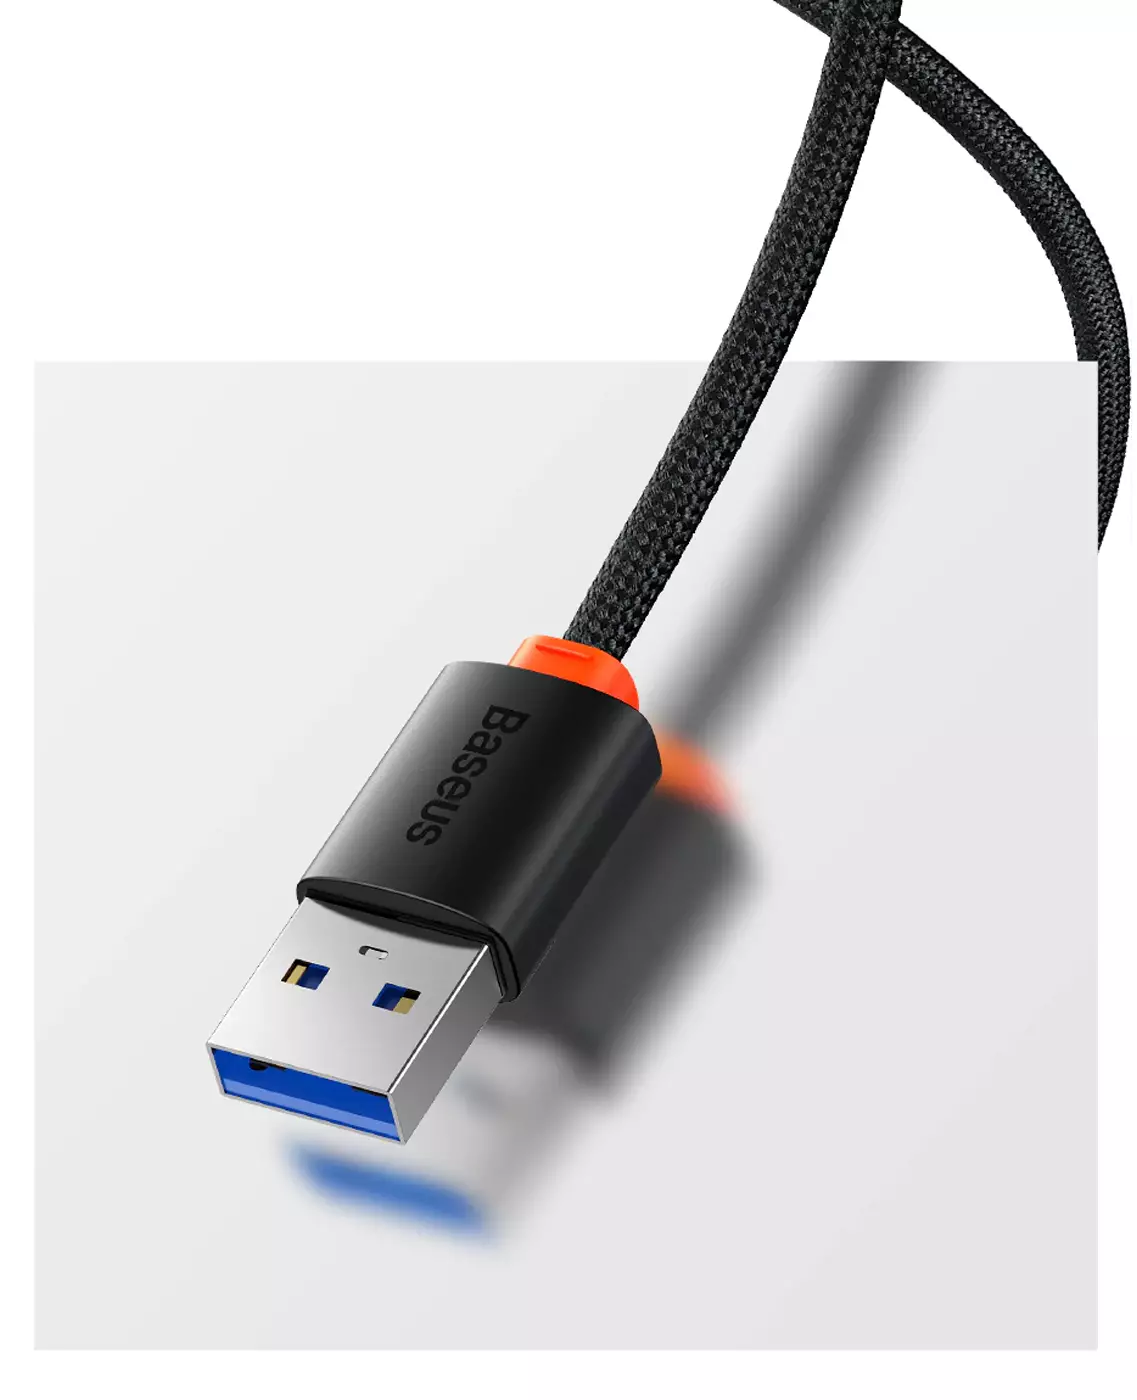 Typ C zu USB 3,1 Adapter otg Mini Adapter für Festplatte/Auto ladegerät/USB  Power Bank unterstützt schnelles Laden/Daten übertragung